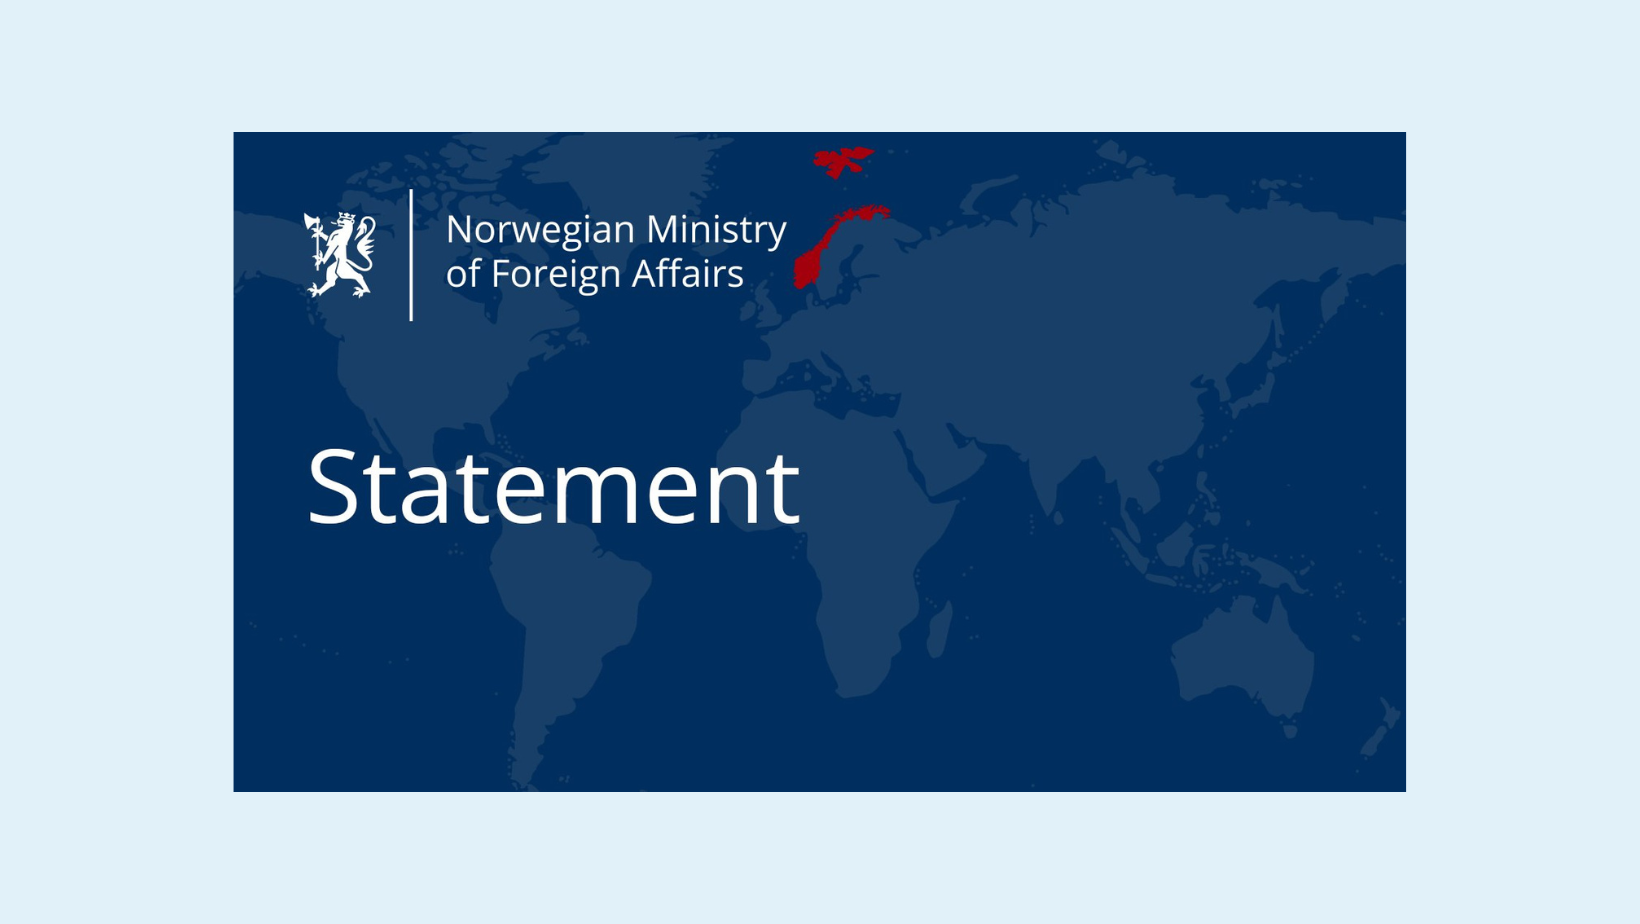 ნორვეგიის საგარეო საქმეთა სამინისტრო: კანონპროექტი სამოქალაქო საზოგადოების ორგანიზაციებს „უცხოელ აგენტებად“ განსაზღვრავს